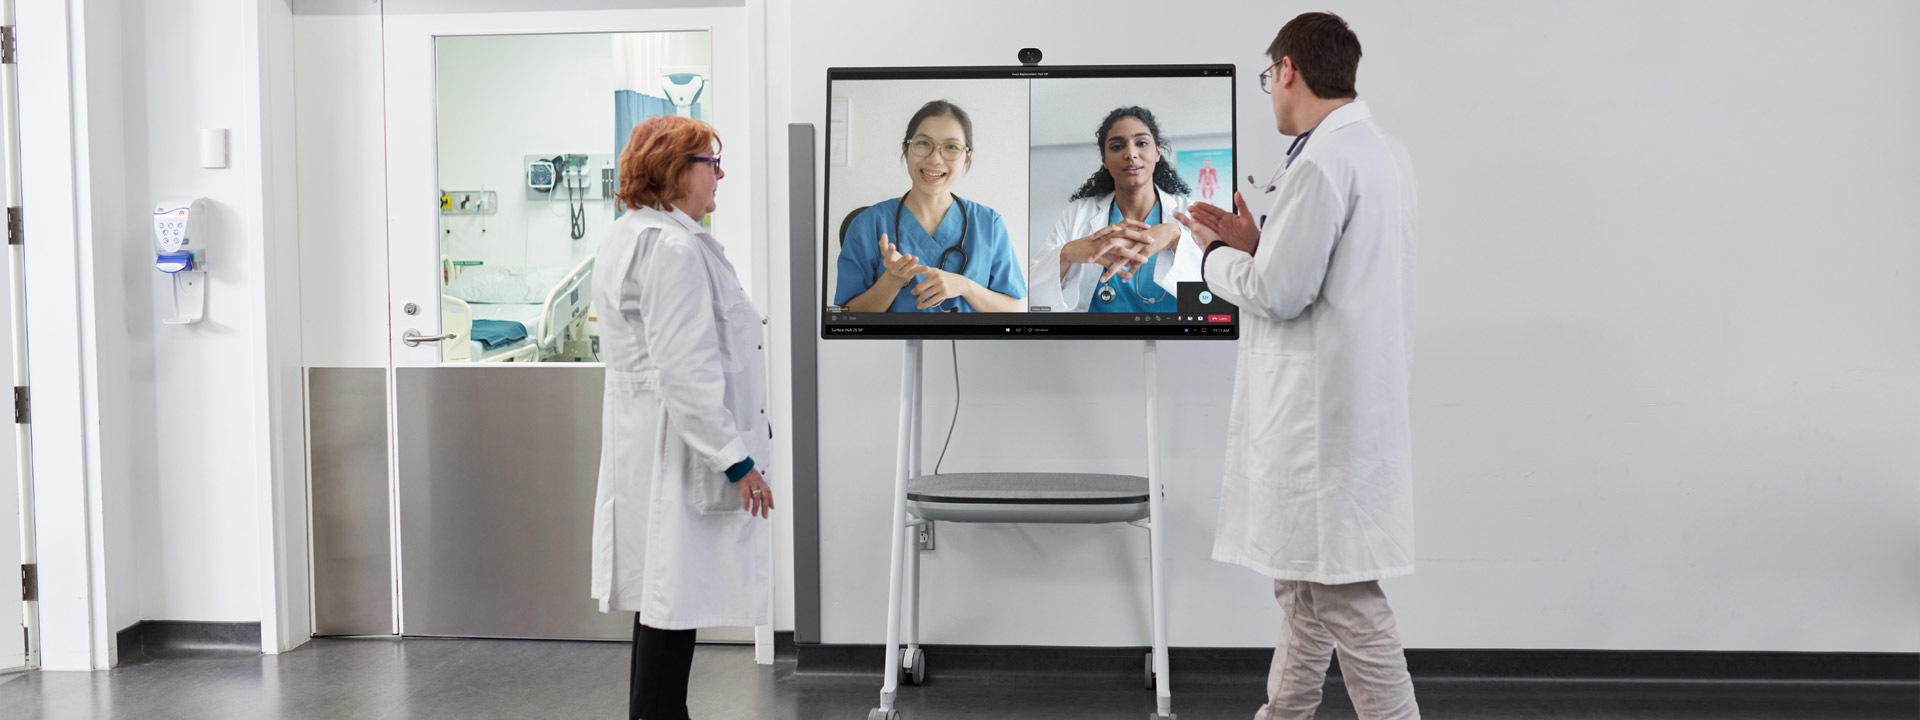 Dois profissionais de medicina a participarem numa chamada de vídeo do Teams num cenário hospitalar